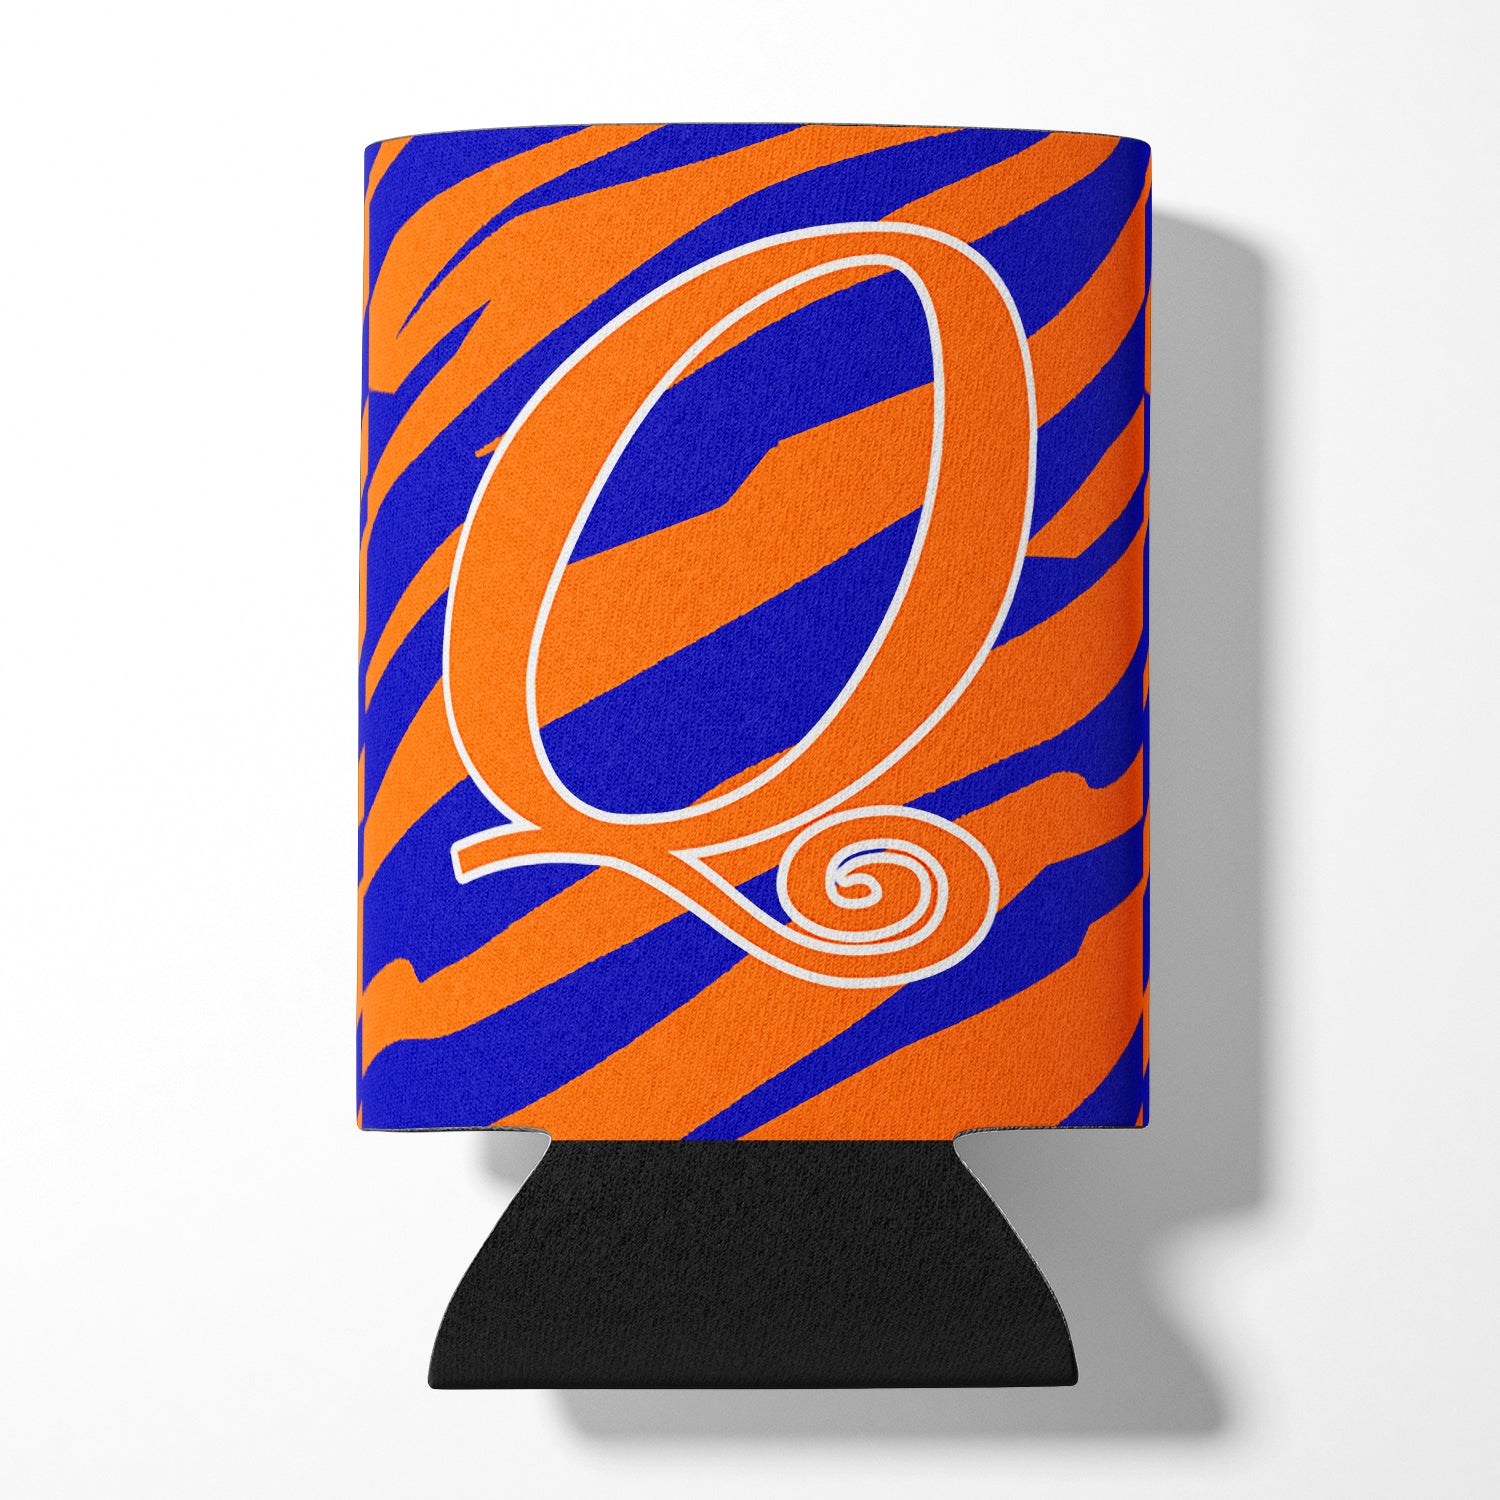 Letter Q Initial Monogram - Tiger Stripe Blue and Orange Can Beverage Insulator Hugger